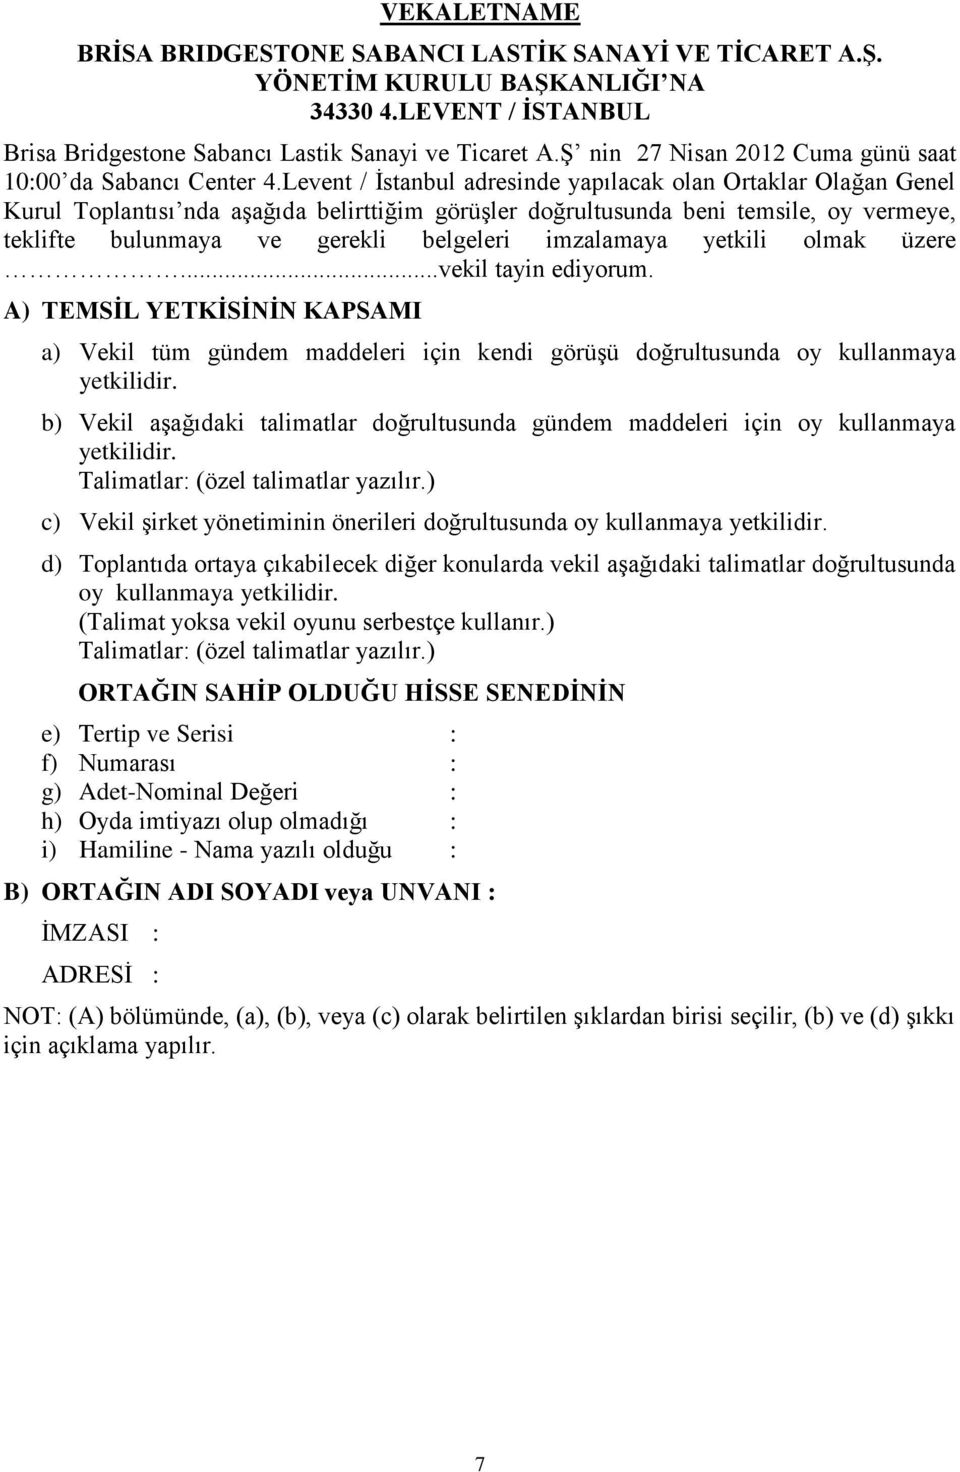 Levent / İstanbul adresinde yapılacak olan Ortaklar Olağan Genel Kurul Toplantısı nda aşağıda belirttiğim görüşler doğrultusunda beni temsile, oy vermeye, teklifte bulunmaya ve gerekli belgeleri